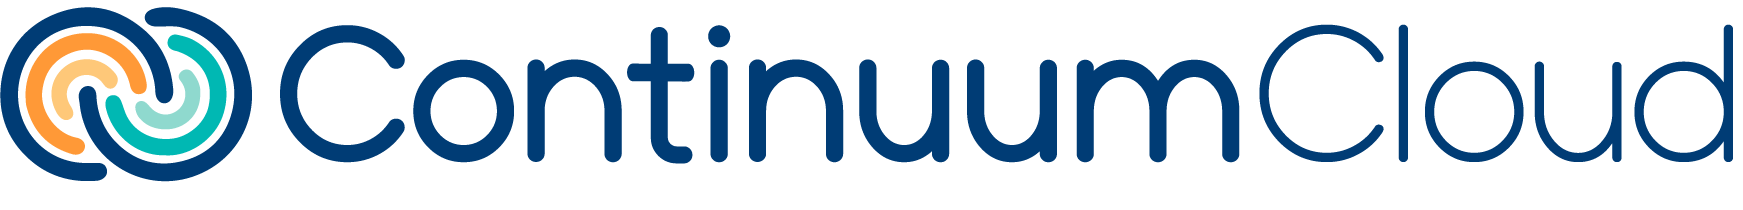 ContinuumCloud Logo